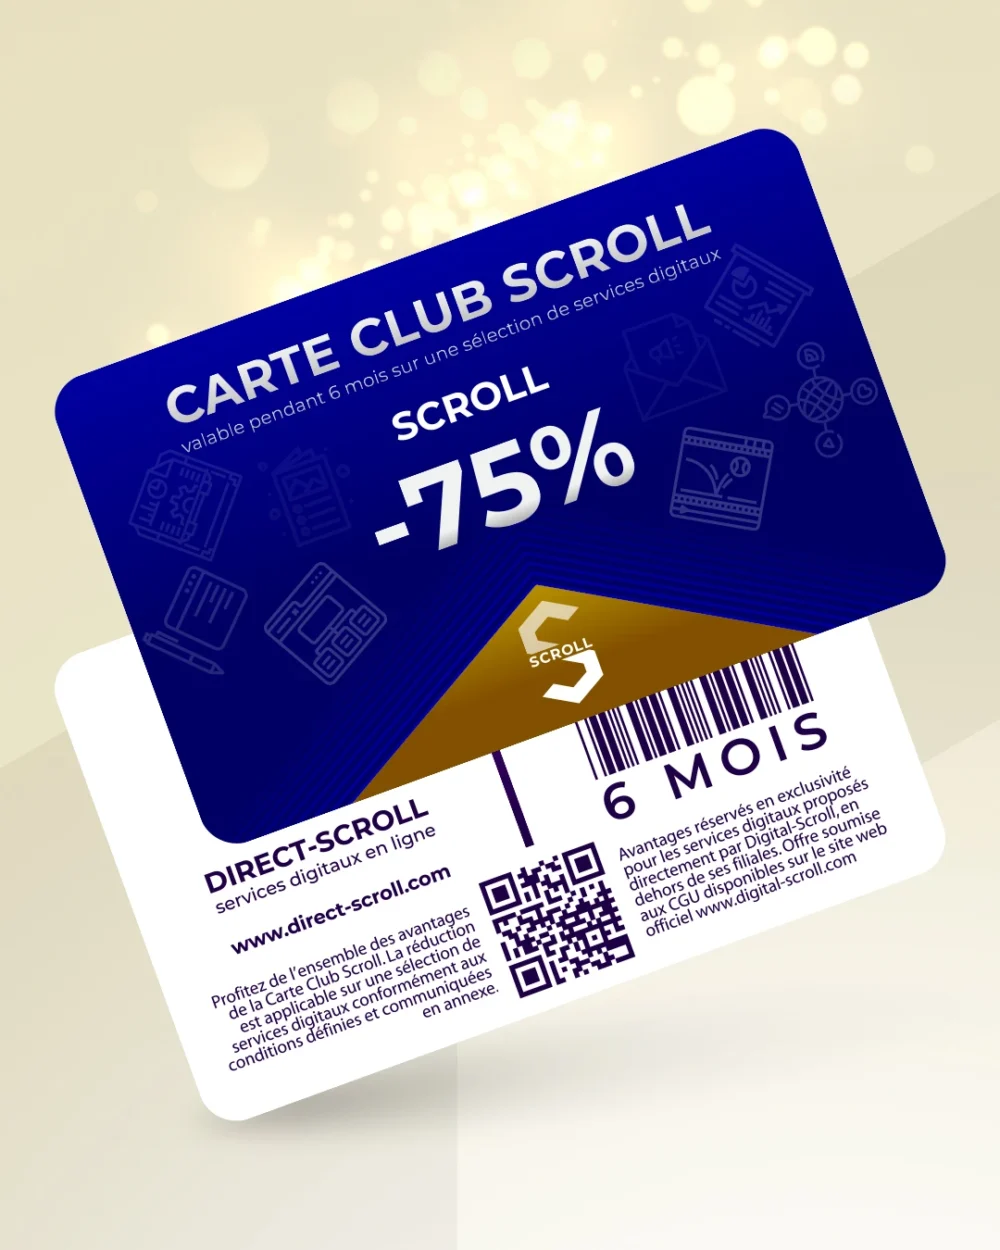 Direct-Scroll | e-Carte Club Scroll -75% de Réduction sur toute la Boutique | e-Cartes Club | Slide 1 | Pack Digital Offert avec un Abonnement de 6 Mois à Notre e-Boutique de Templates pour Visuels Réseaux Sociaux